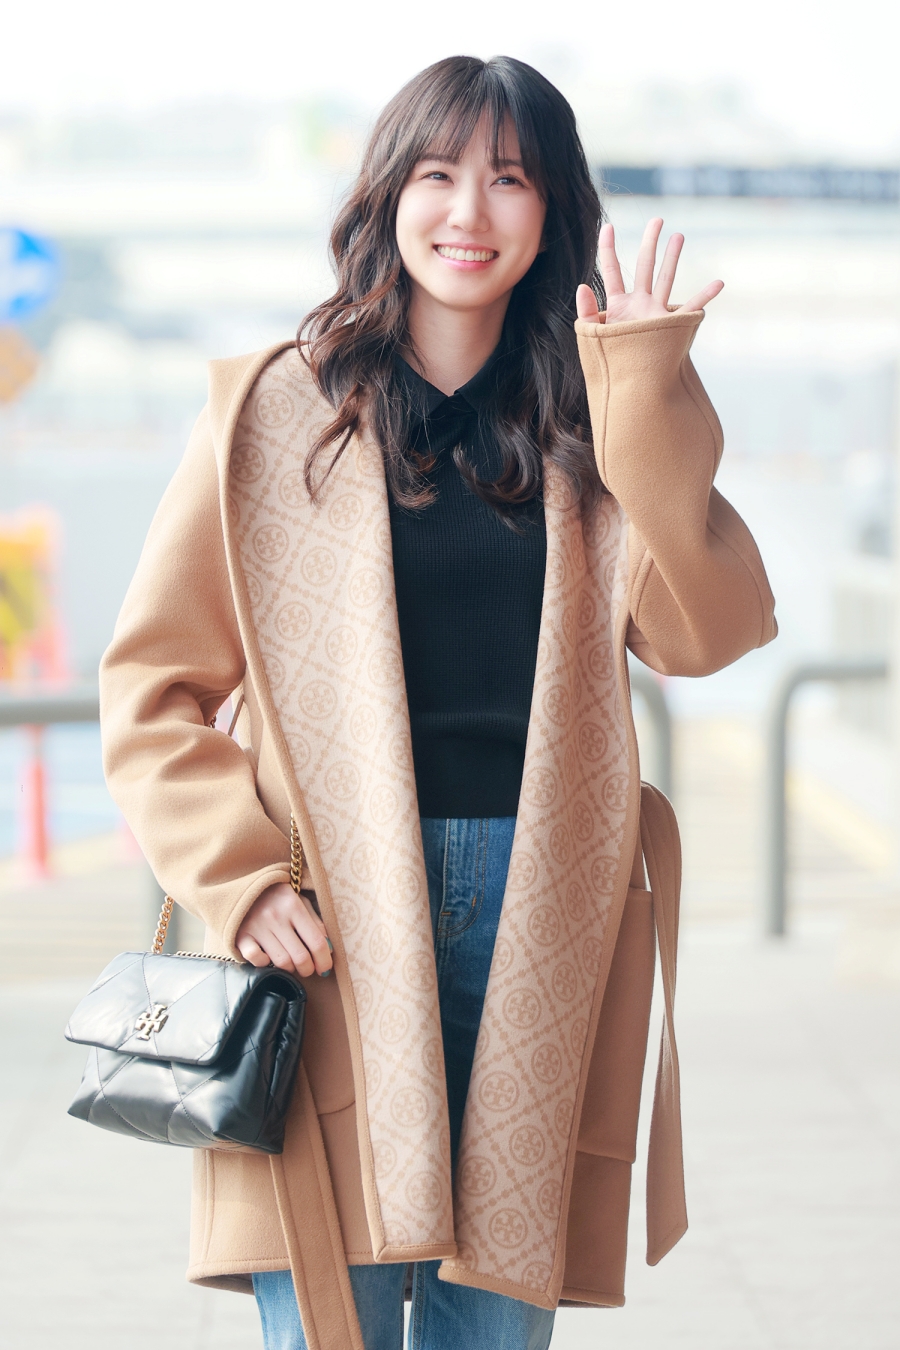 박은빈, 日 향하는 러블리 미소…따라 입고 싶은 공항패션[포토]